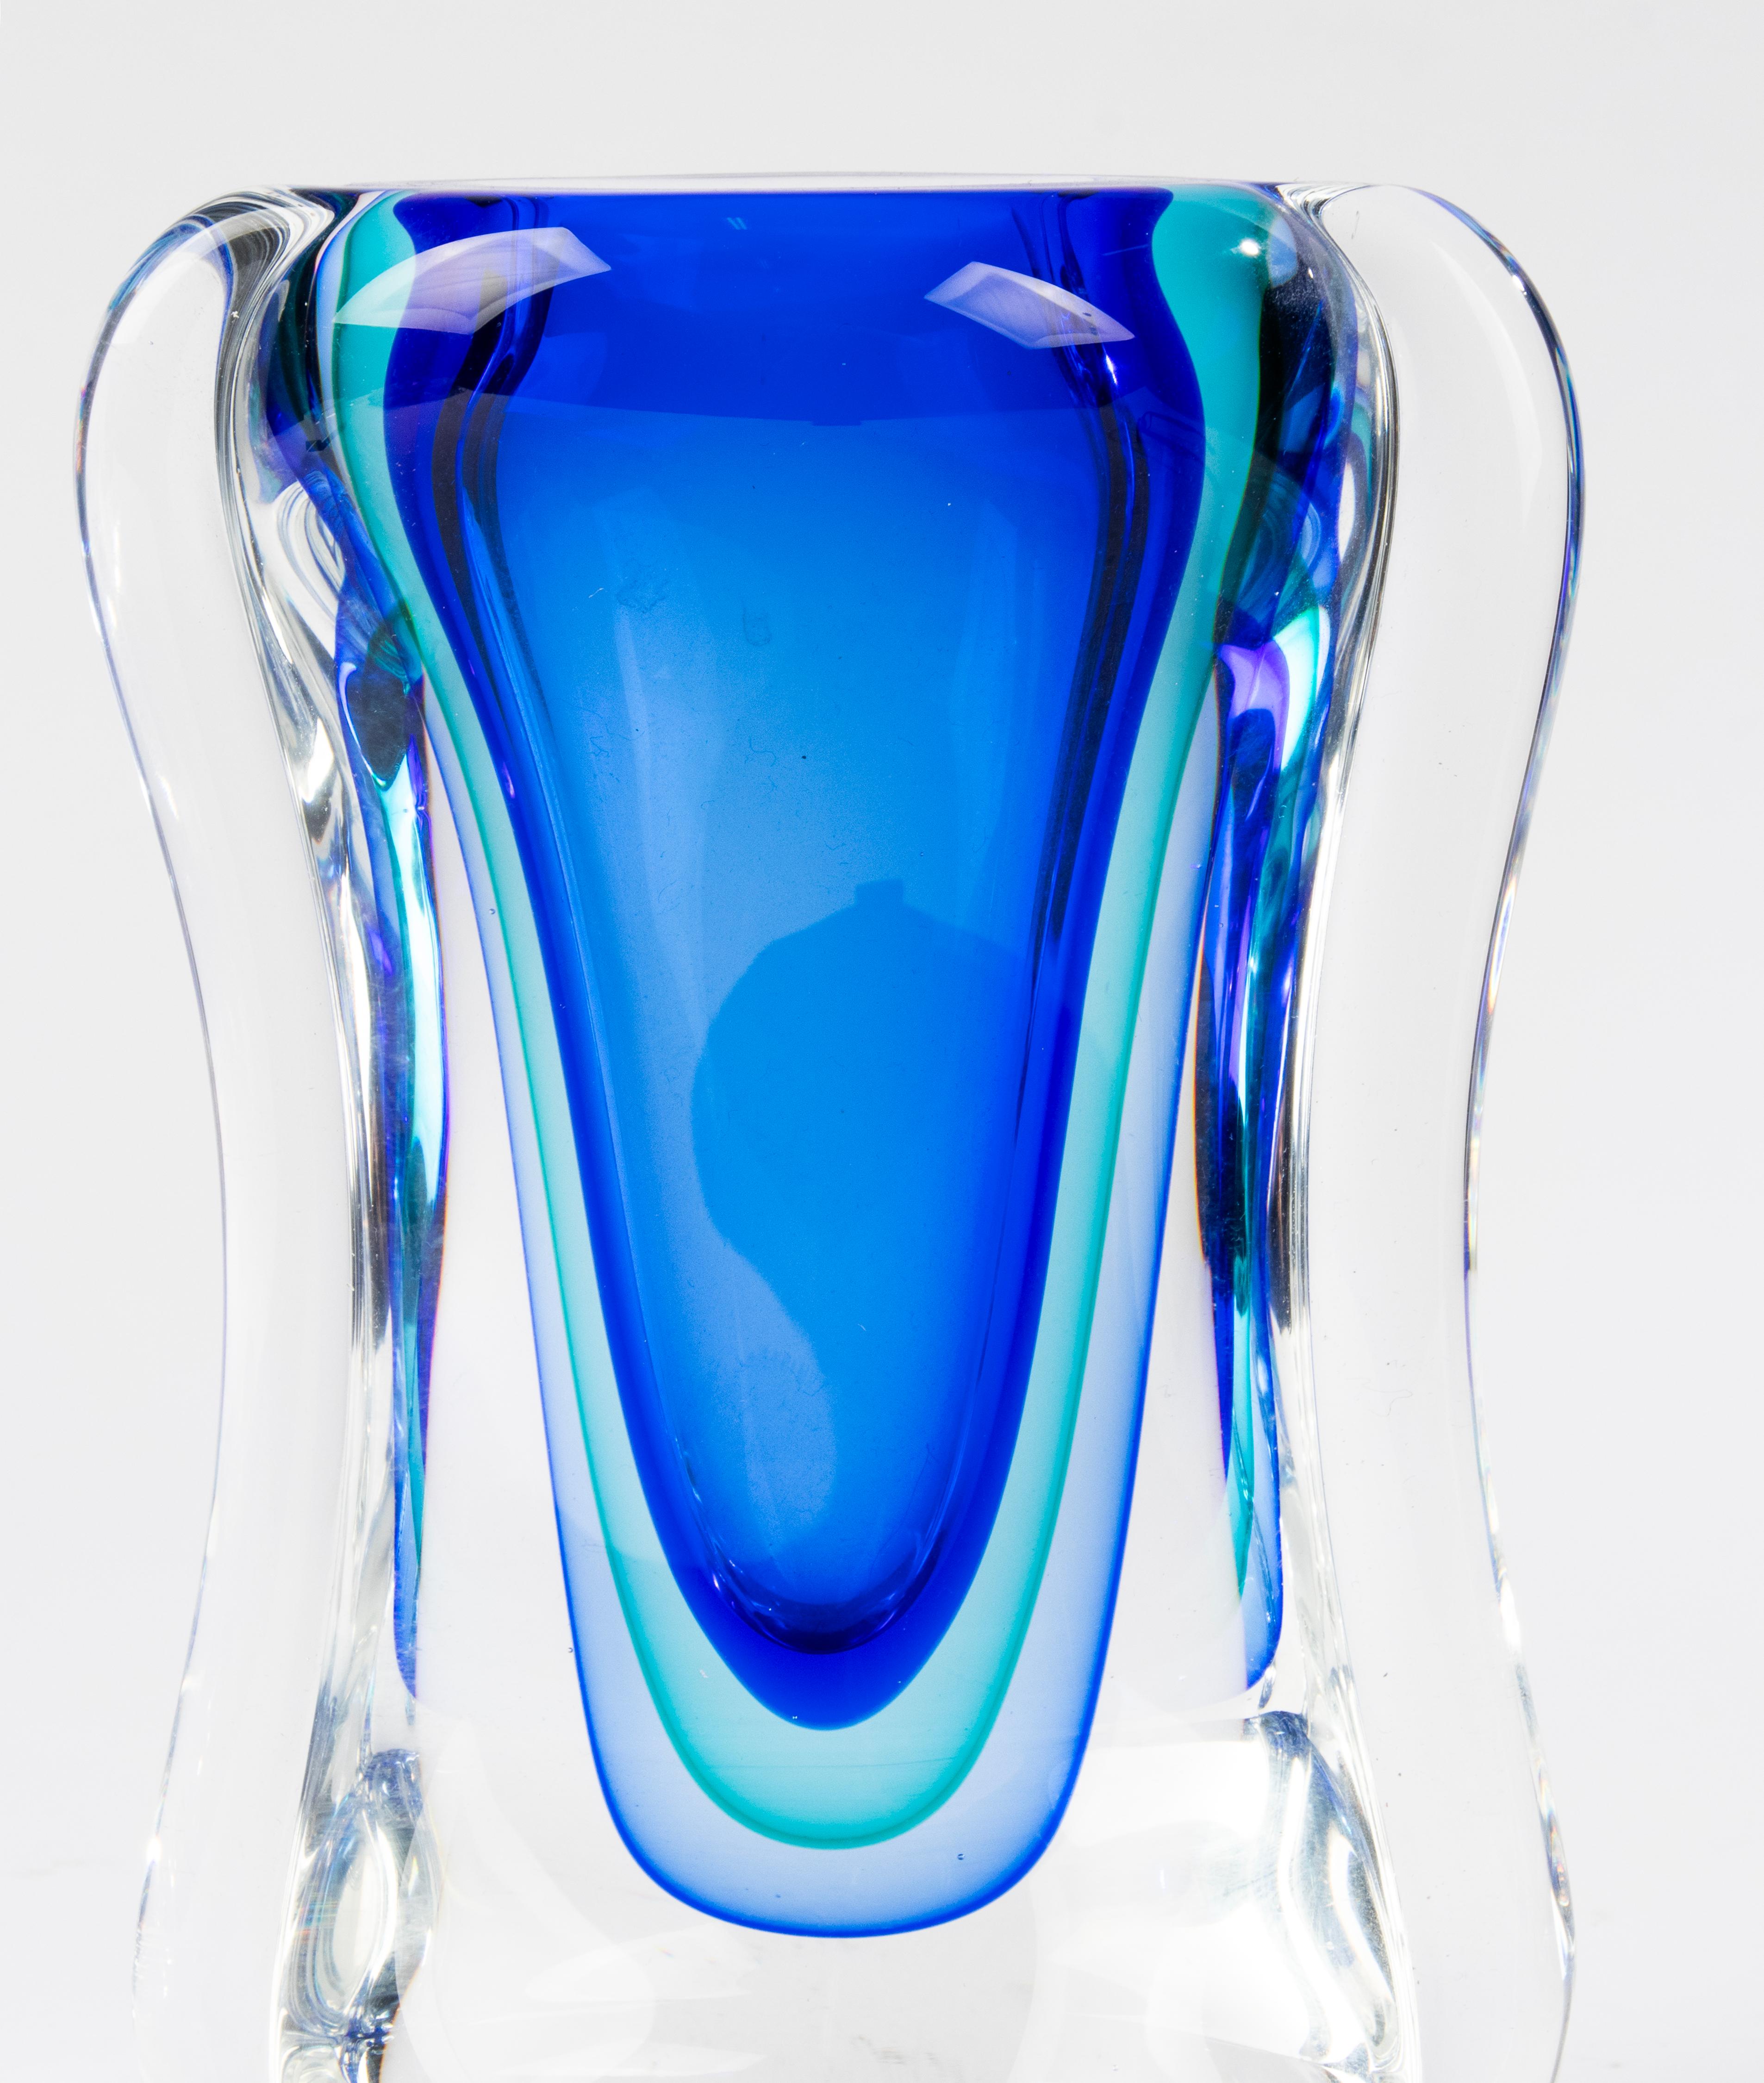 Magnifique grand vase en verre de Murano, attribué au designer italien Alfredo Barbini. 
Le vase est en très bon état, sans éclats ni morsures de feta. 
Magnifiques couleurs dégradées. 
Lourd et à parois épaisses.

Dimensions : 15 x 7 cm et 19,5 cm